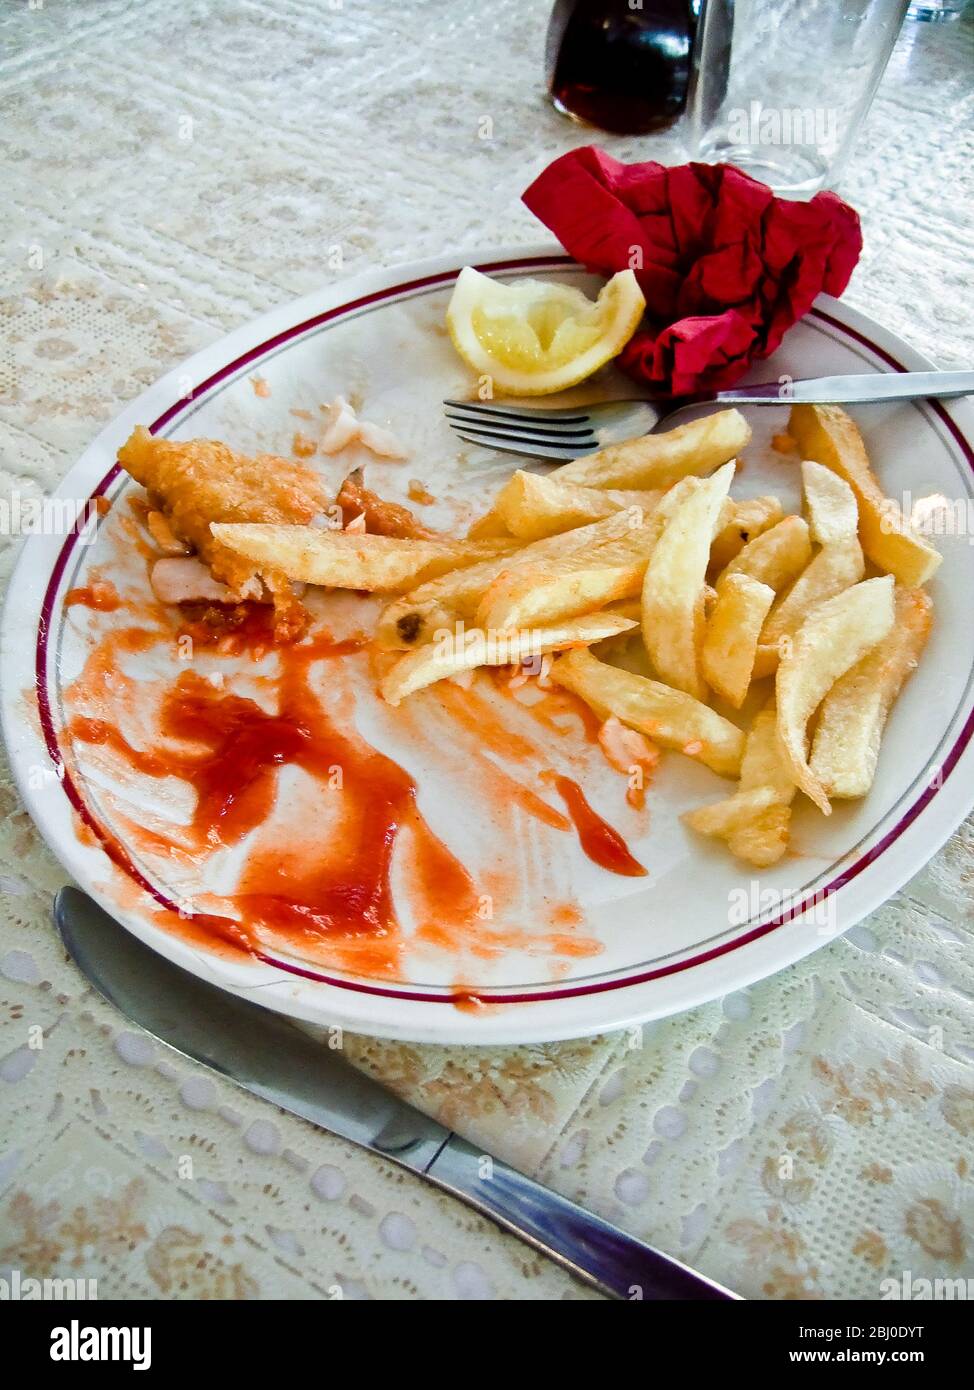 Sobras en el plato después de comer pescado y patatas fritas en el restaurante. - Foto de stock